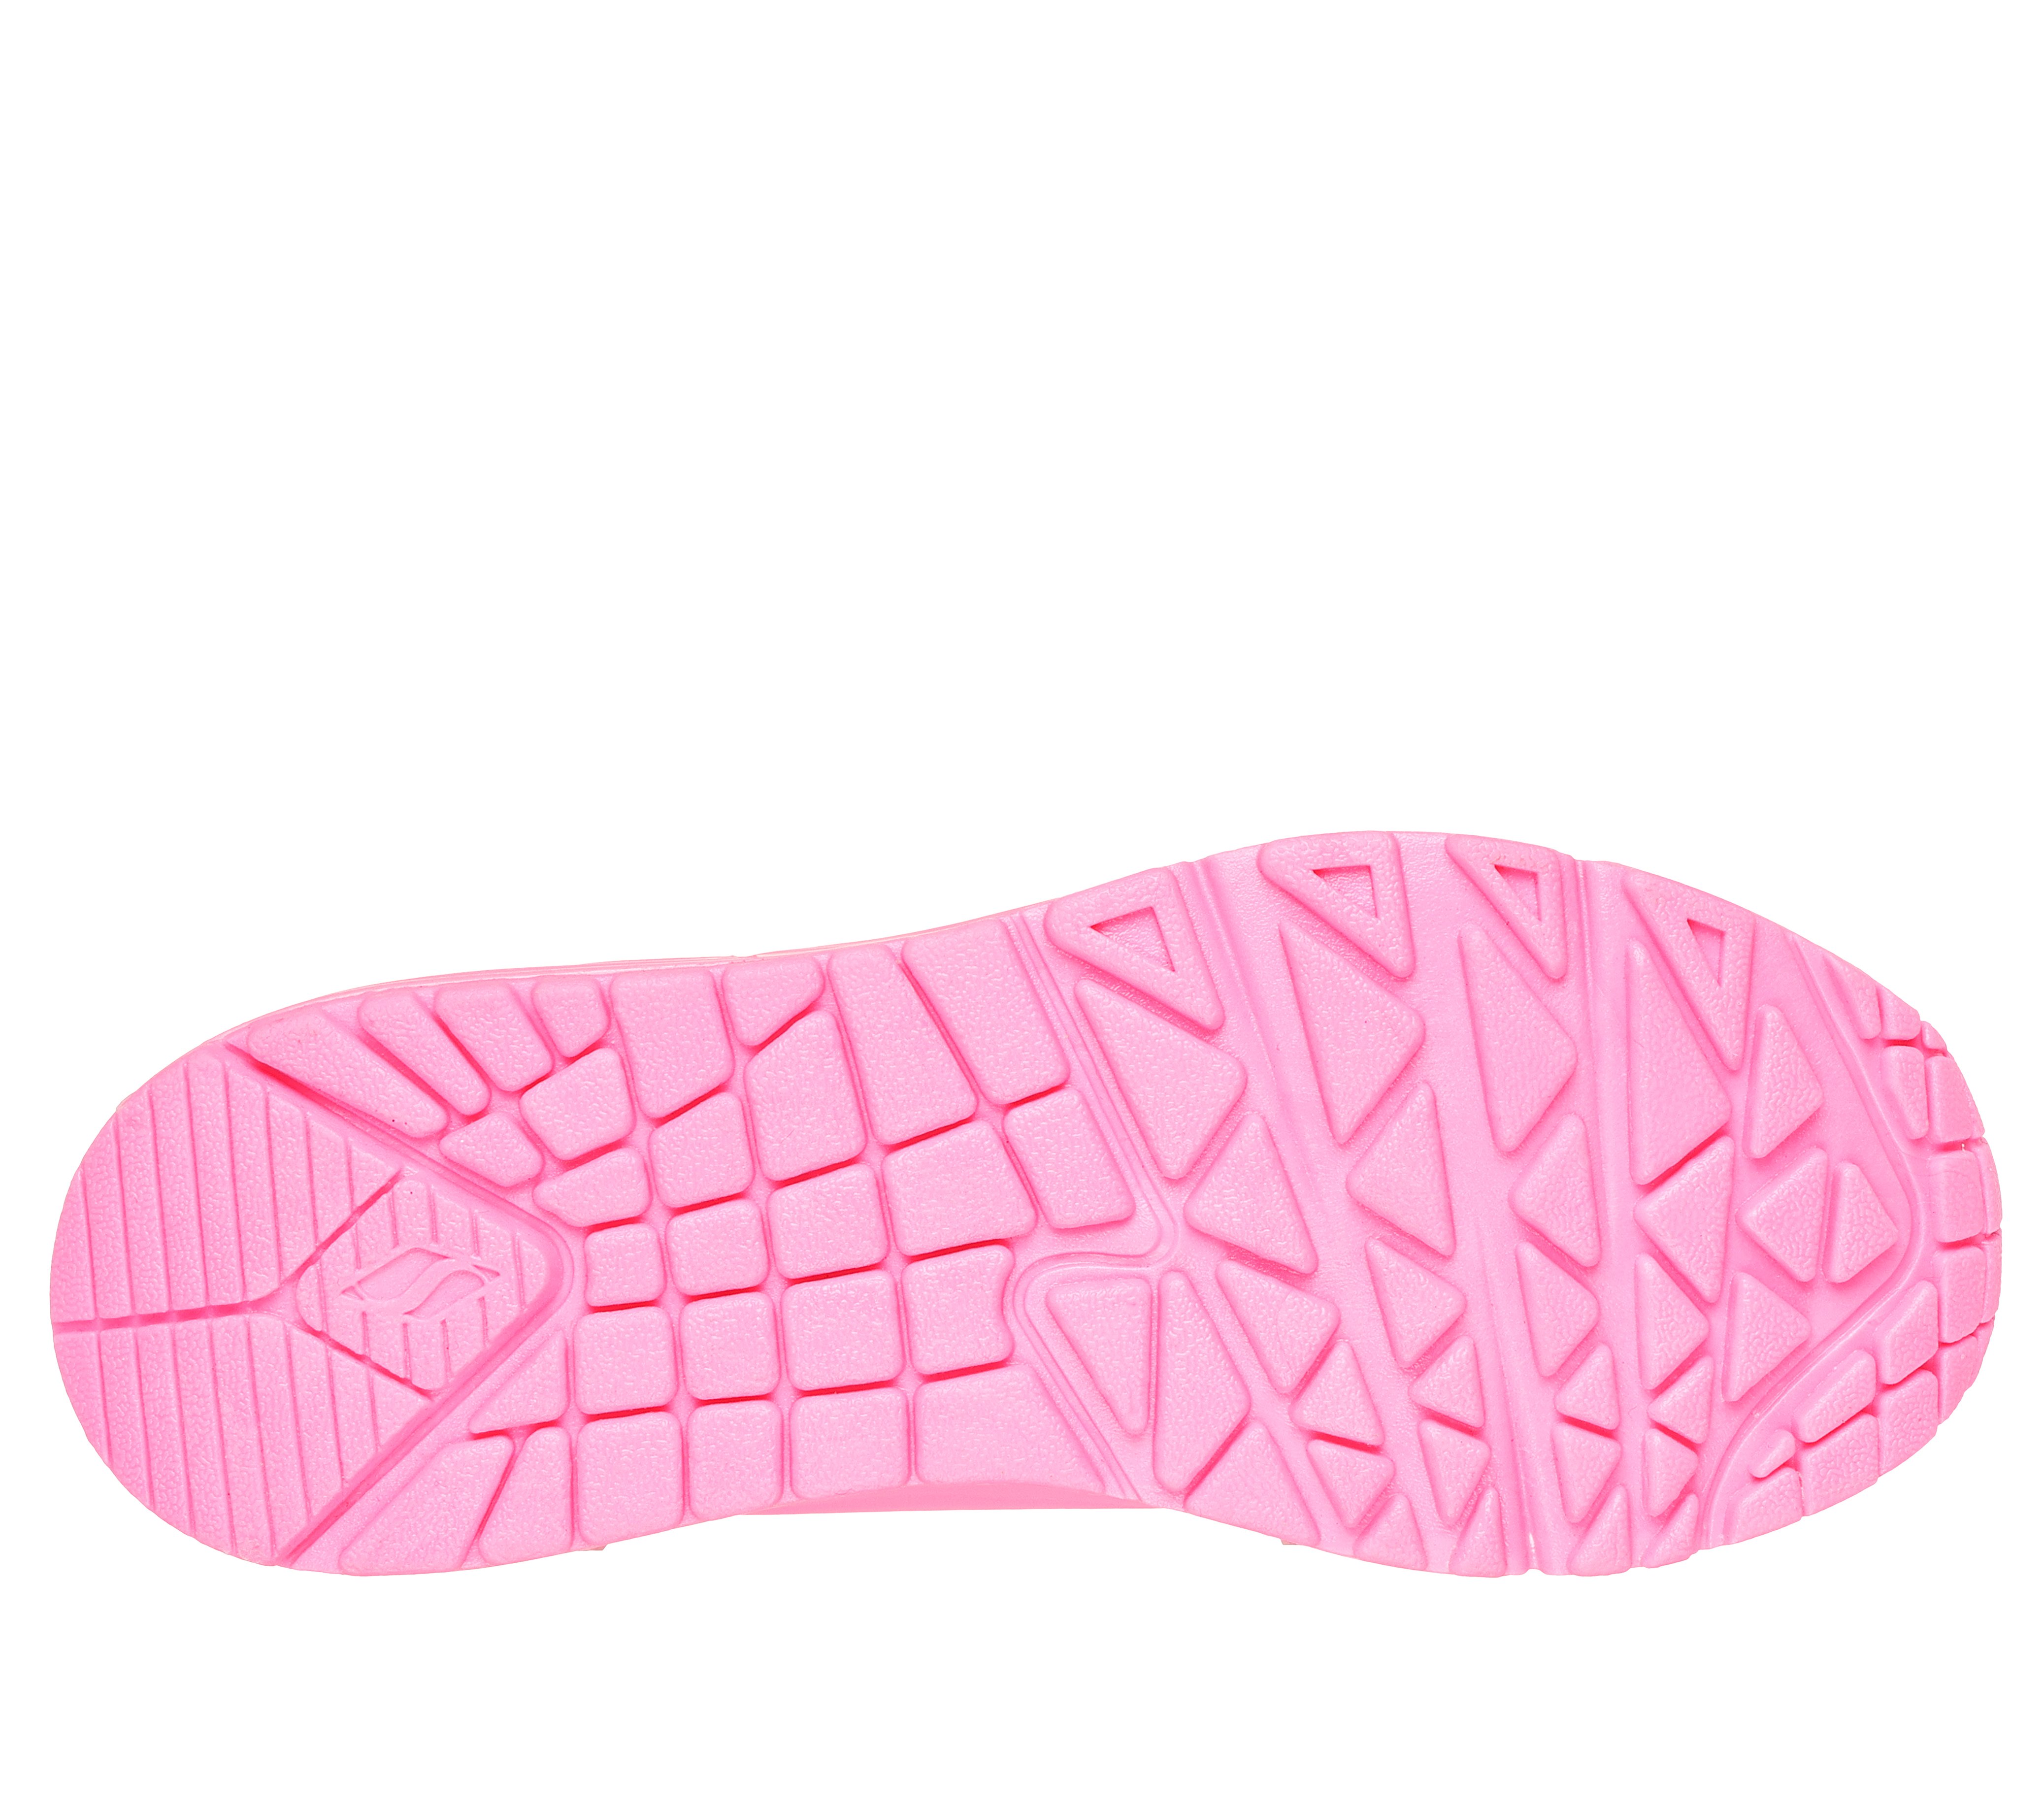 Skechers Girl's Uno Gen1 - Neon Glow Sneaker | Size 1.0 | Light Green | Synthetic